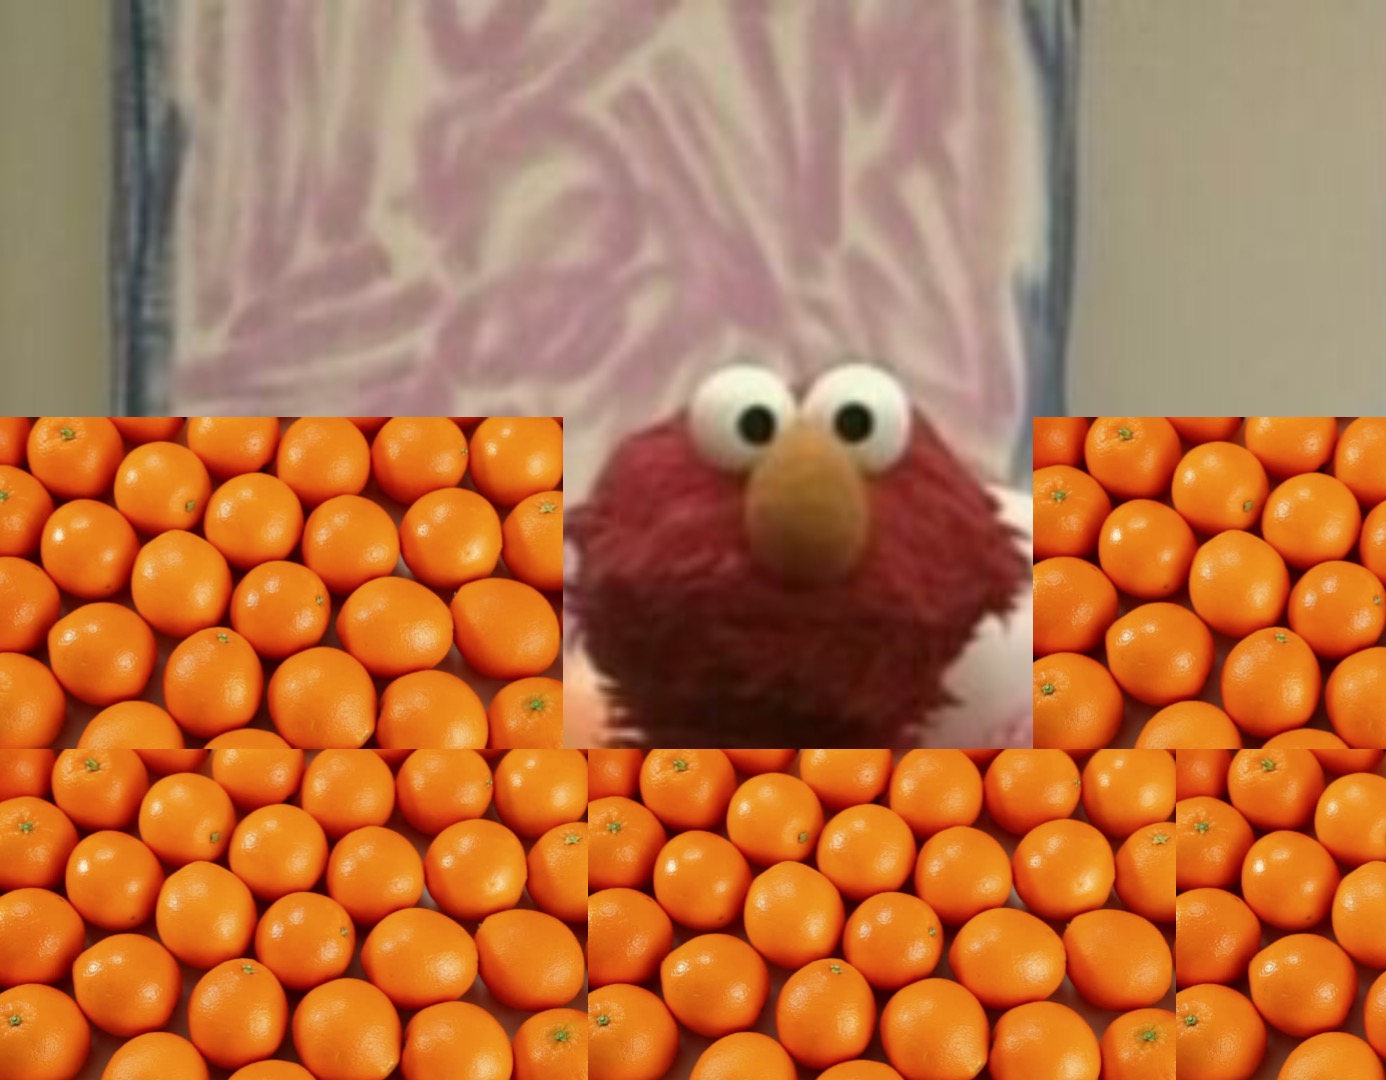 sang finansiere klassisk Elmo's World: Oranges | Elmos world fanon Wiki | Fandom